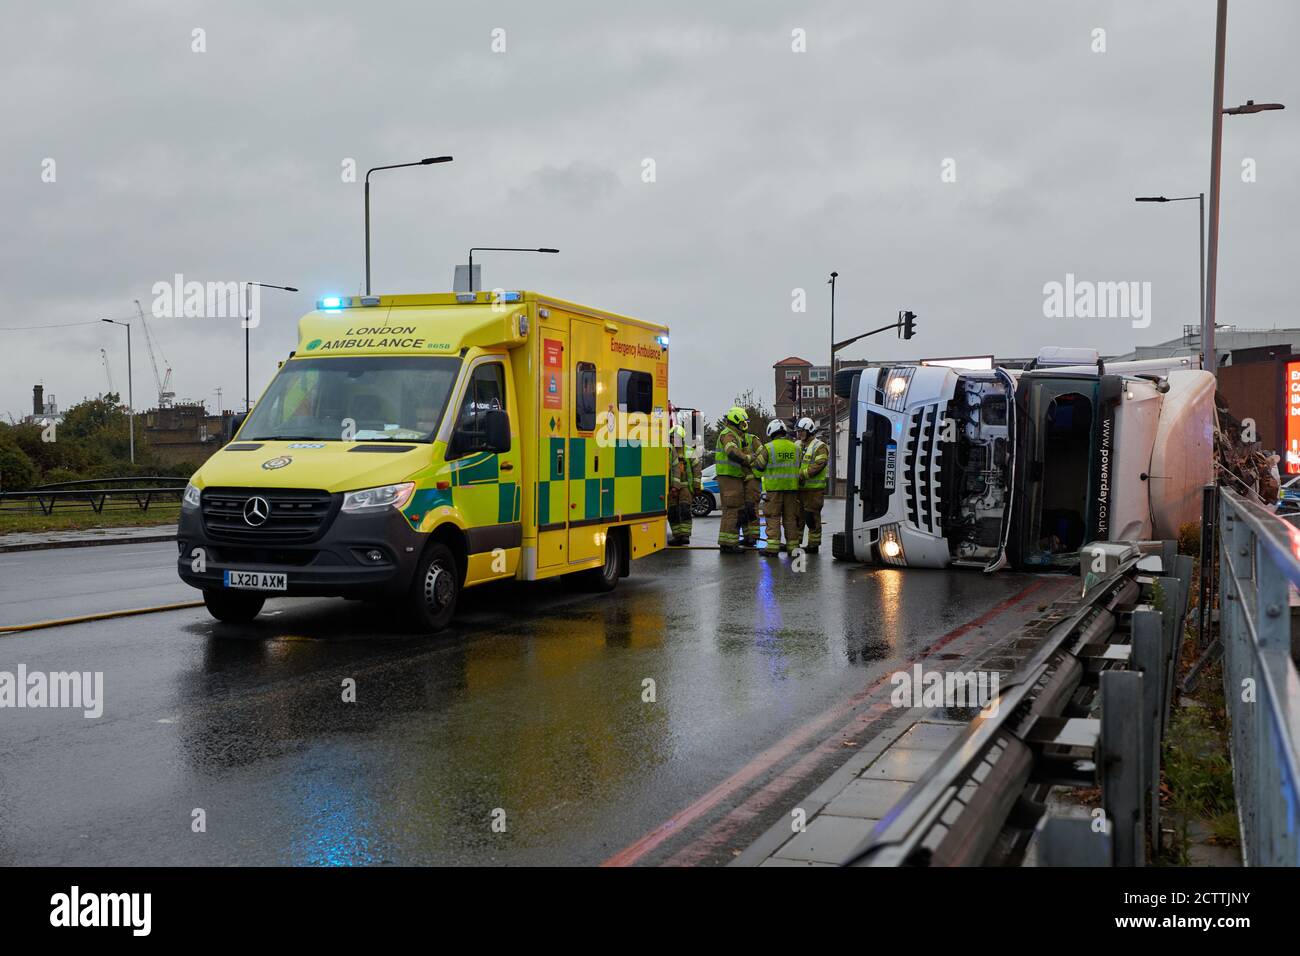 Londra, Regno Unito. - 25 settembre 2020: Lavoratori di emergenza sulla scena di un camion di rifiuti che si è rovesciato sulla rotatoria di Holland Park, vicino a Shepherd's Bush a Londra ovest. Foto Stock